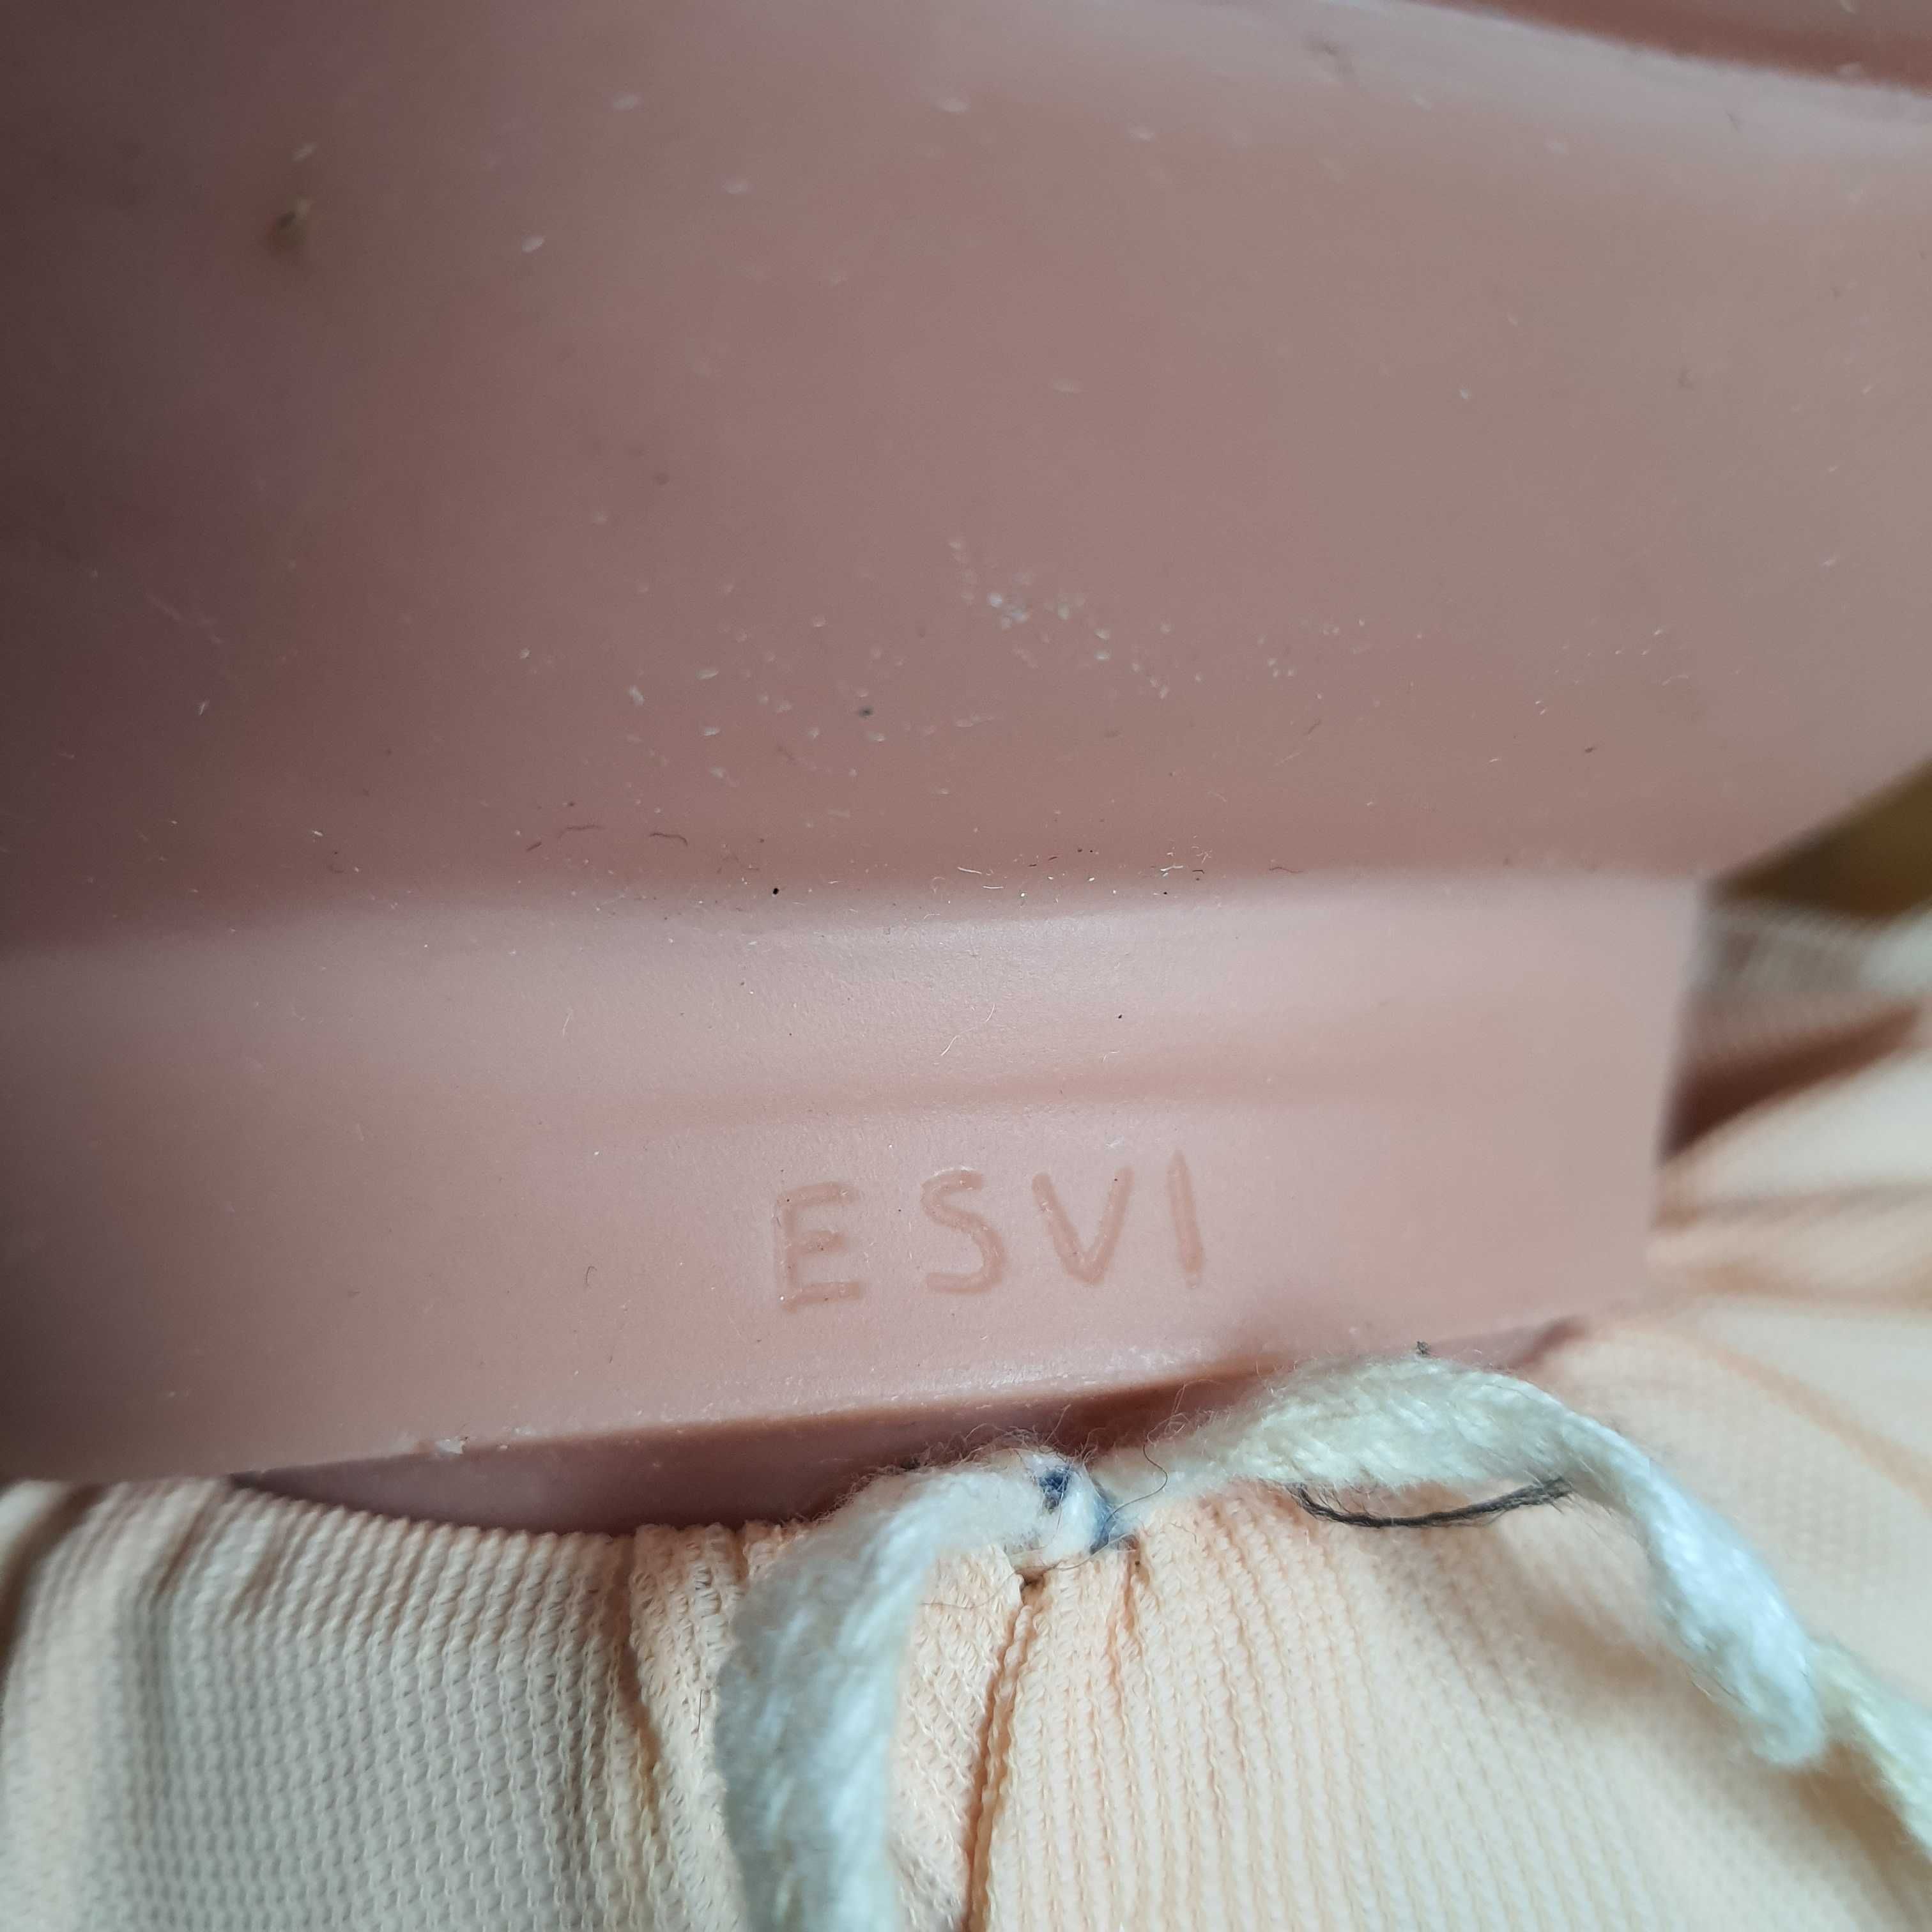 Винтаж пупс кукла Esvi 56см под реставрацию без ноги